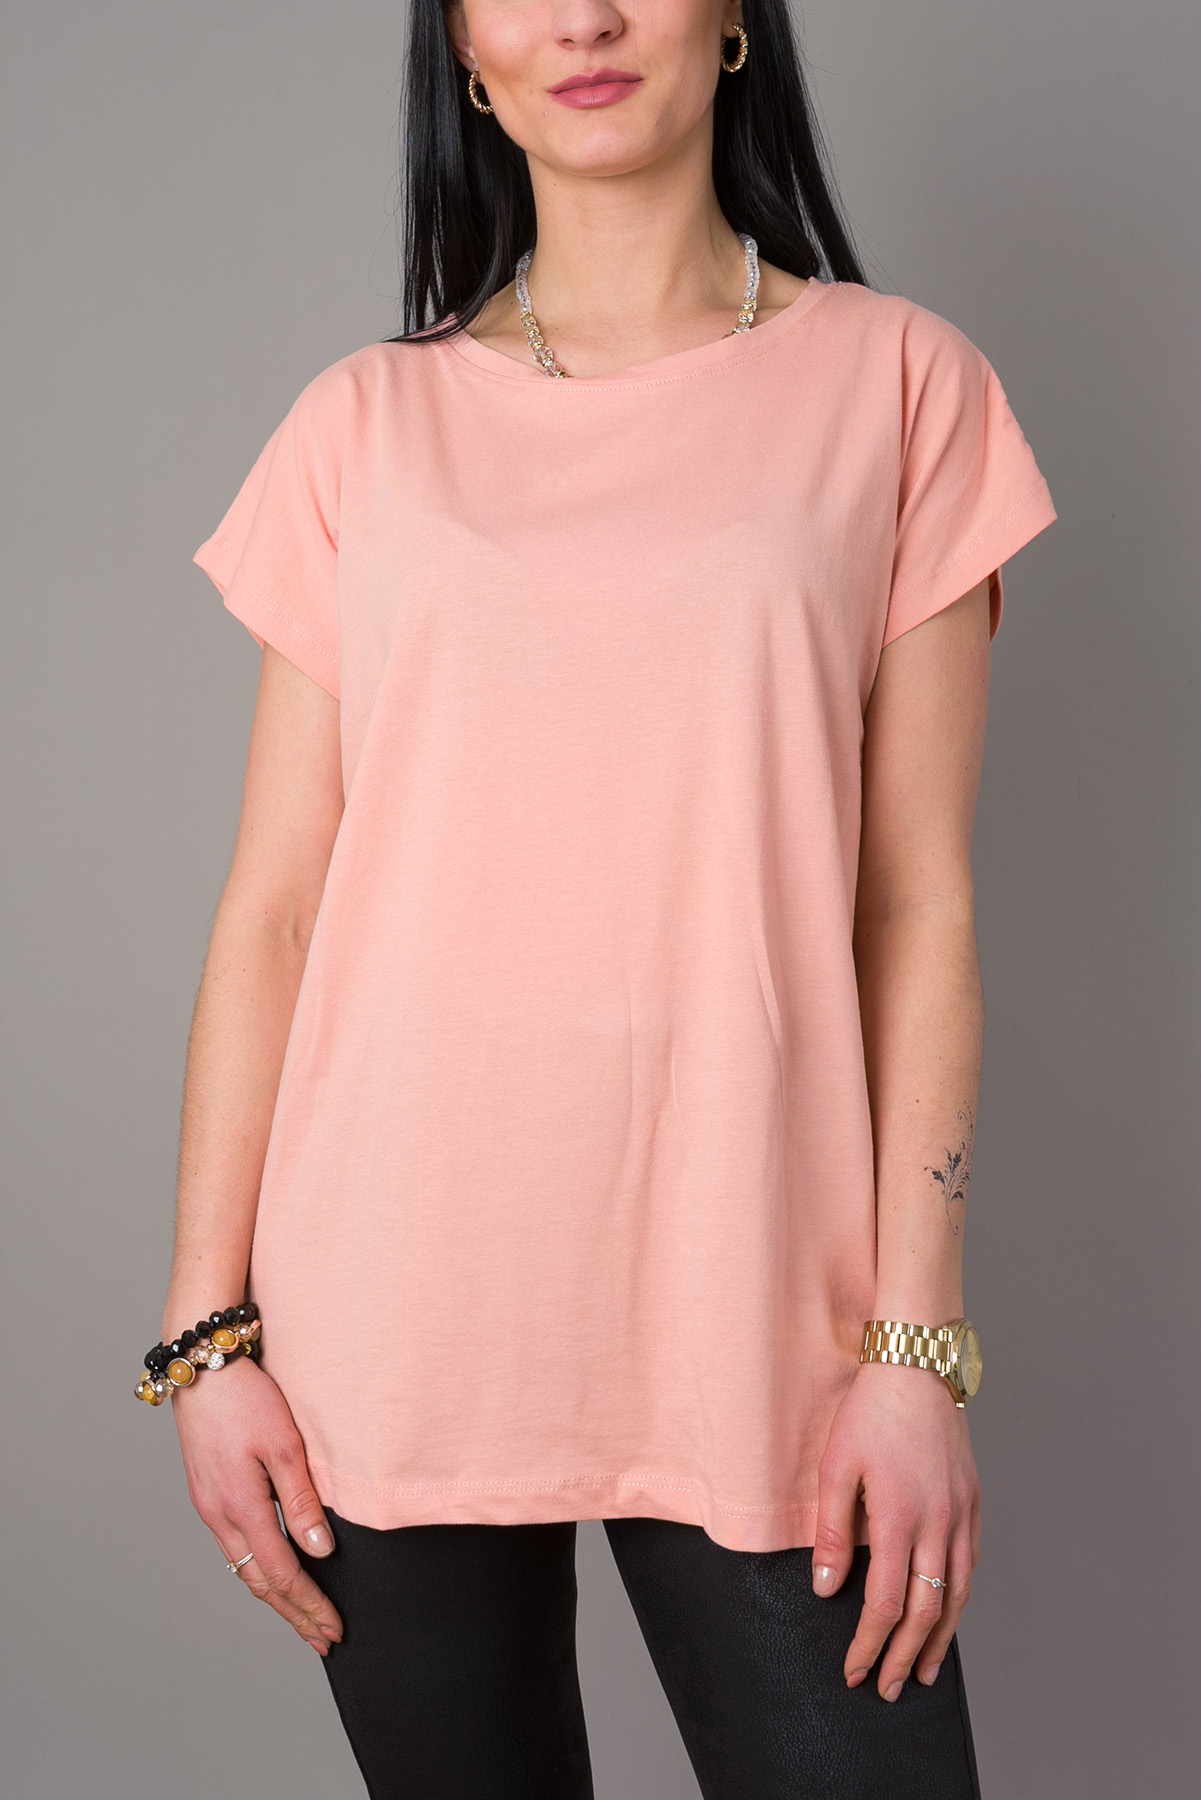 Dámske bavlnené tričko BIG CLASSIC - ružové